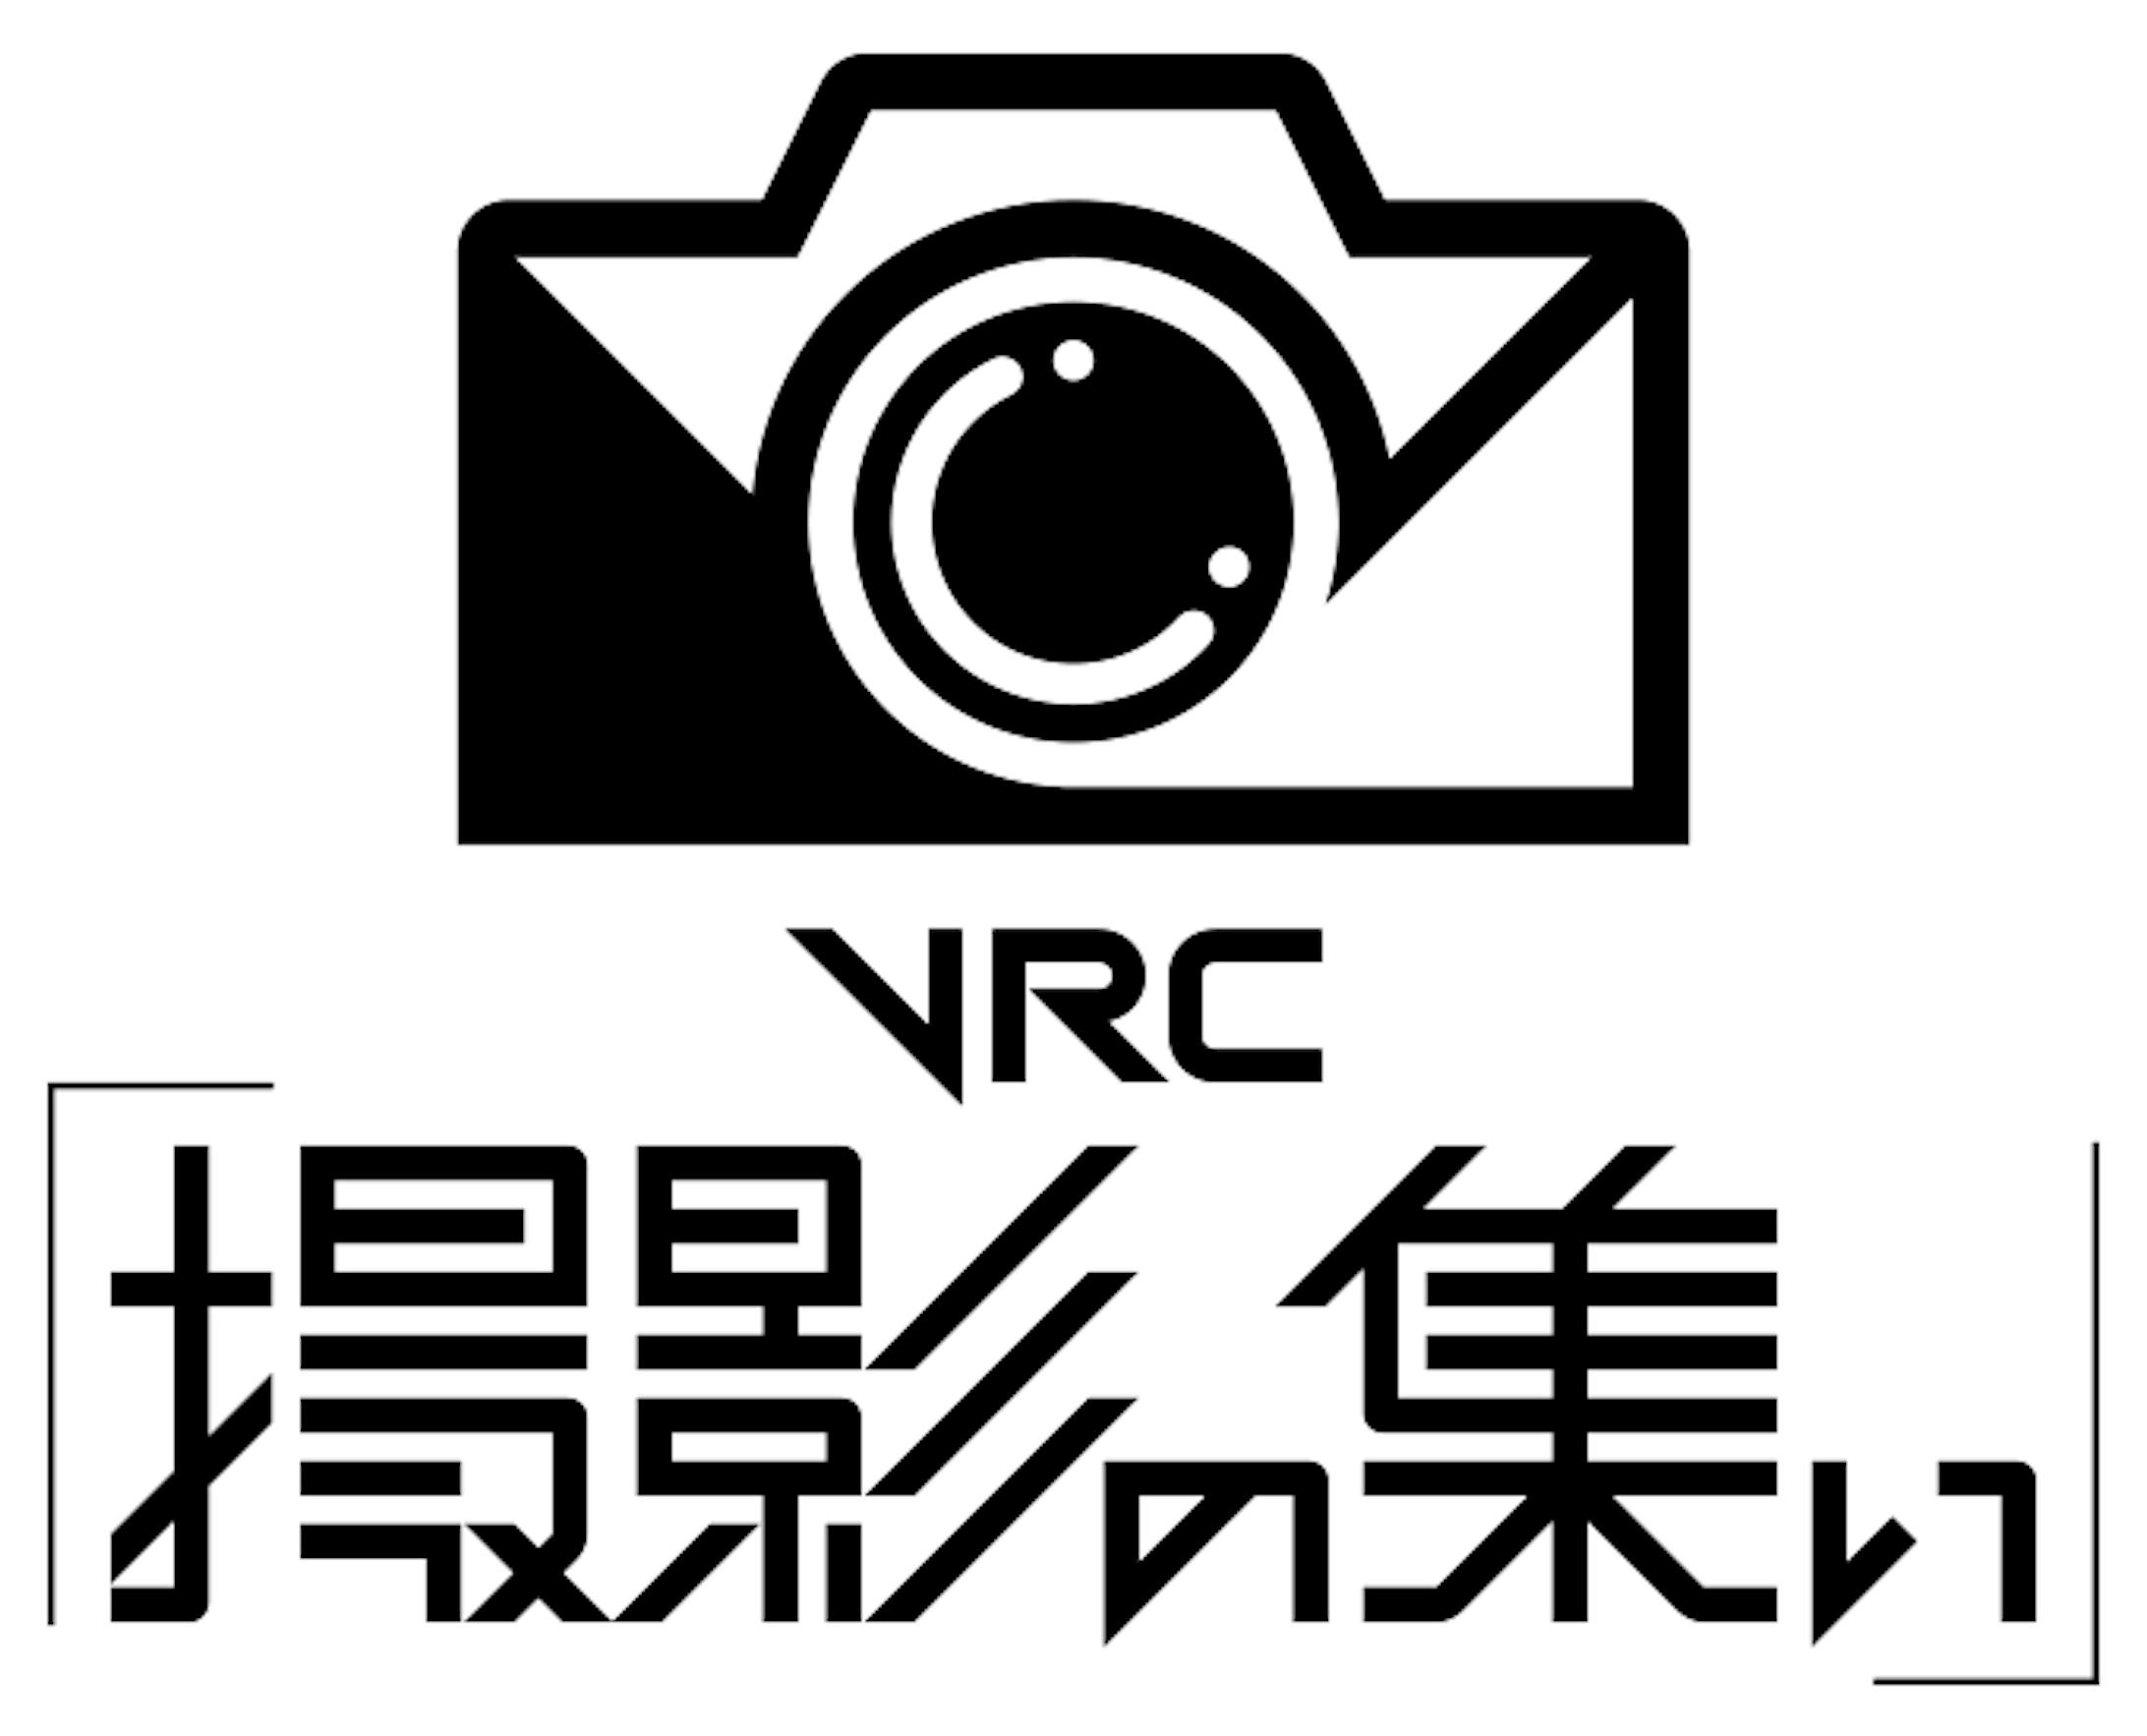 ロゴ - VRC「撮影の集い」-1